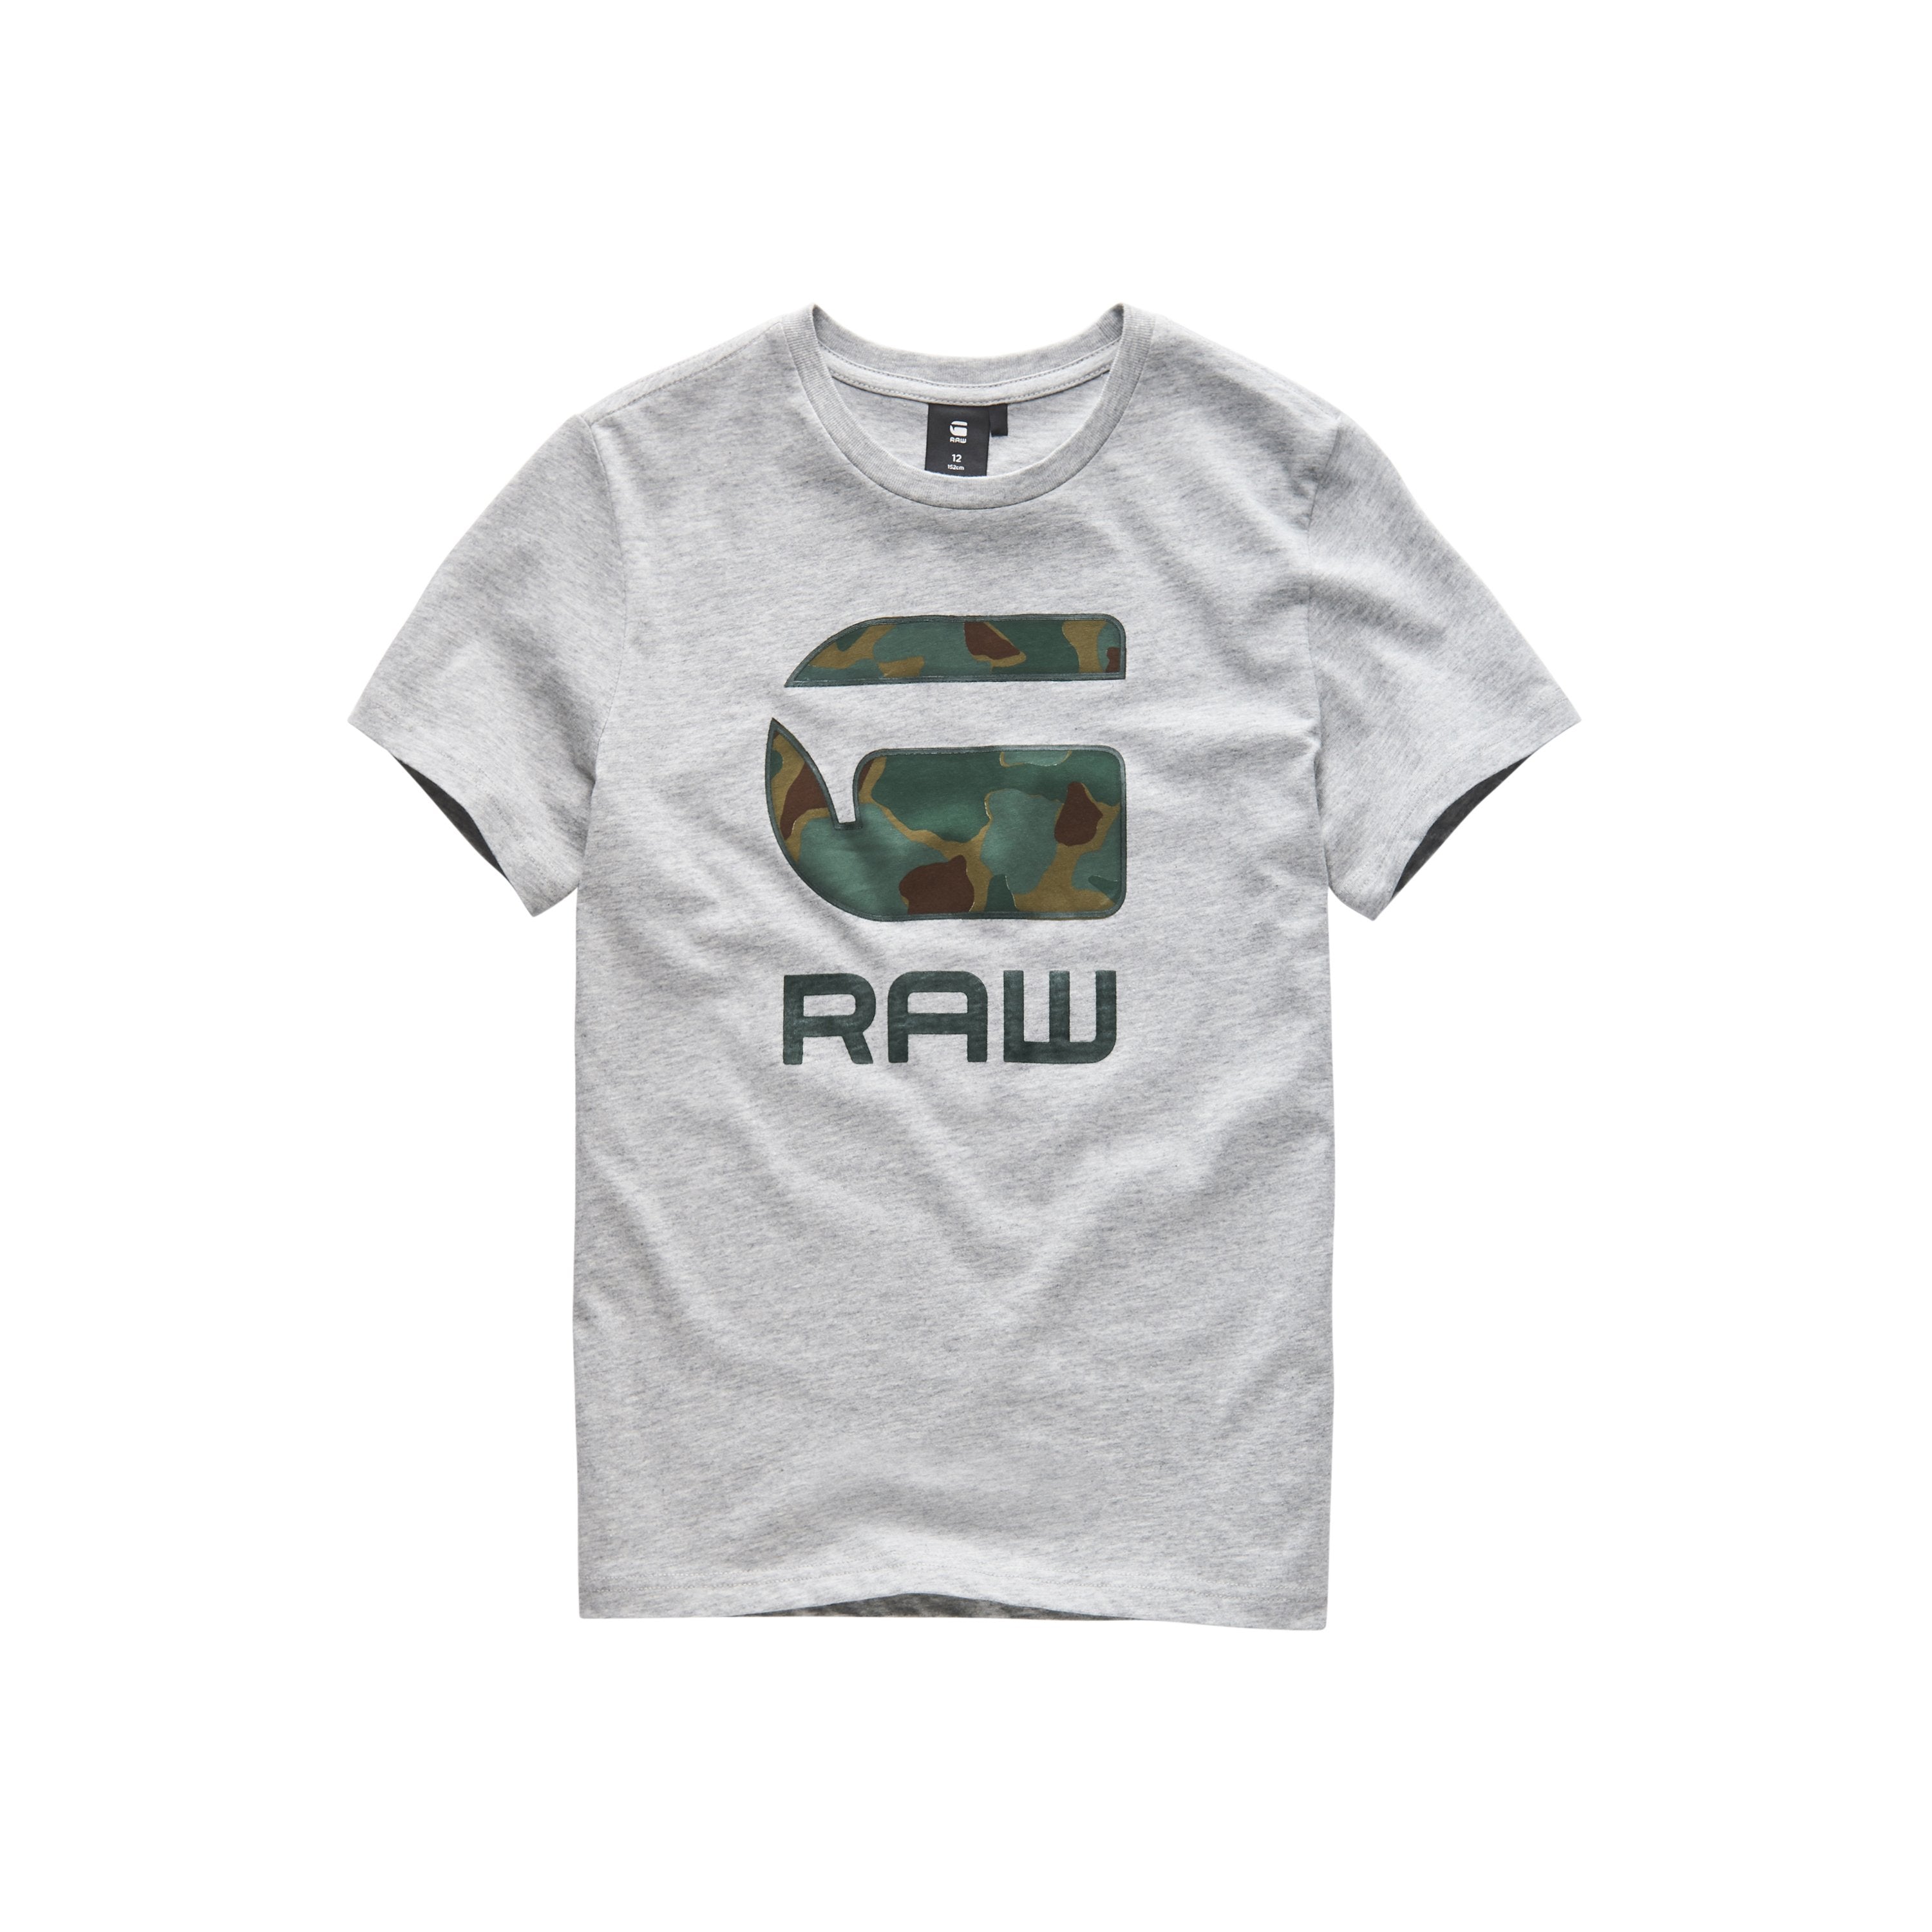 Jongens Tee Shirt van G-Star Raw in de kleur Industrial Grey in maat 128.